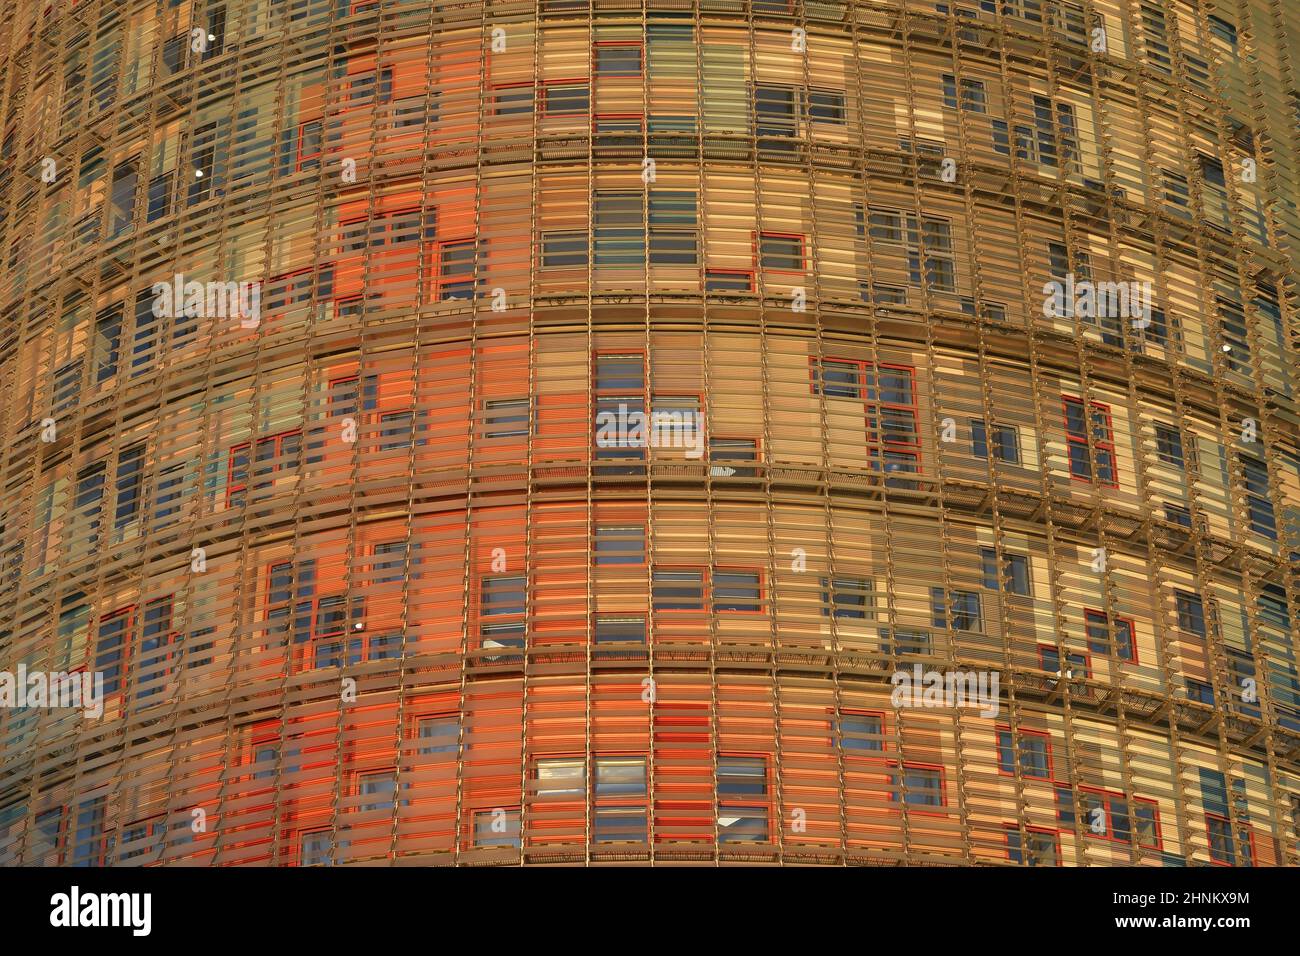 Torre Glories, modernes Glas Wolkenkratzer Fassade Detail. Entworfen vom französischen Architekten Jean Nouvel in Barcelona, Spanien. Stockfoto